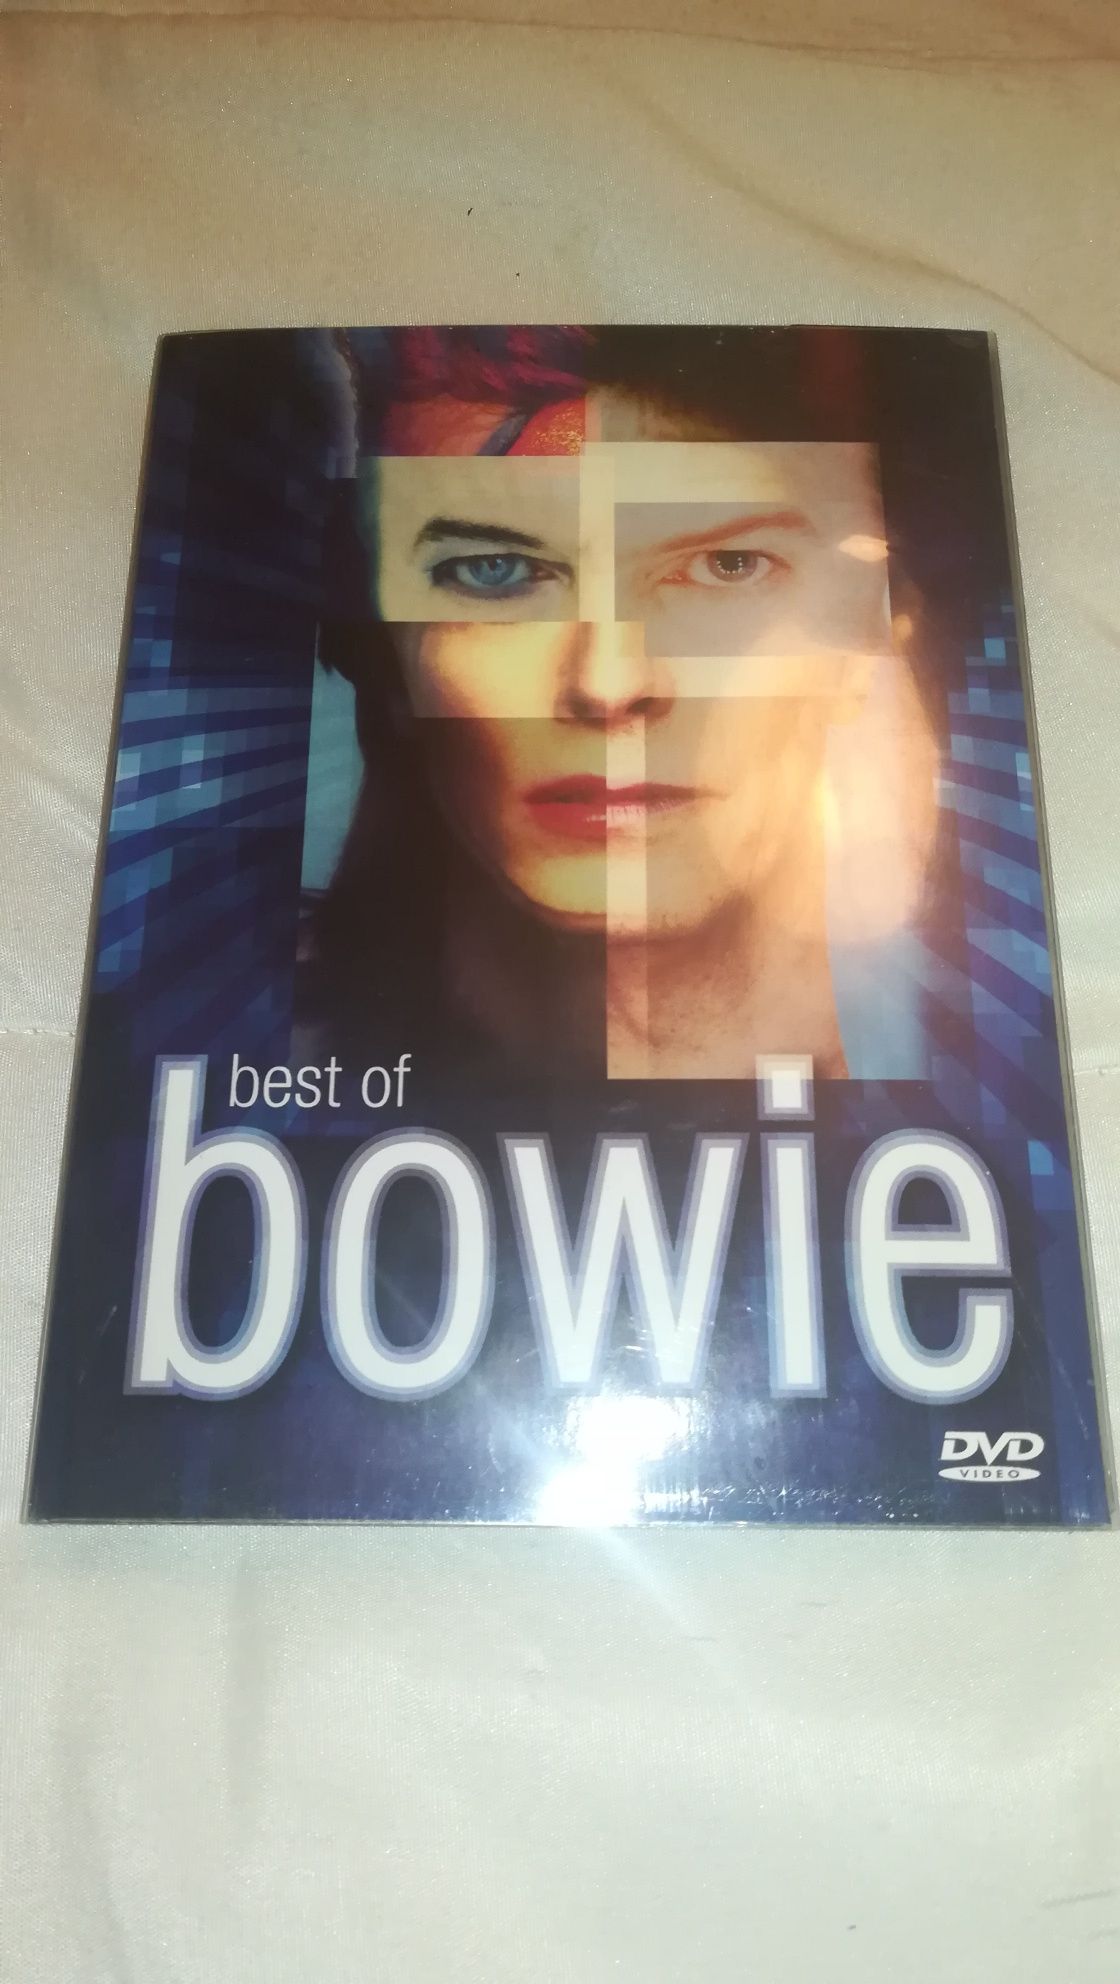 DVD Duplo David Bowie "Best of Bowie" (COMO NOVO)